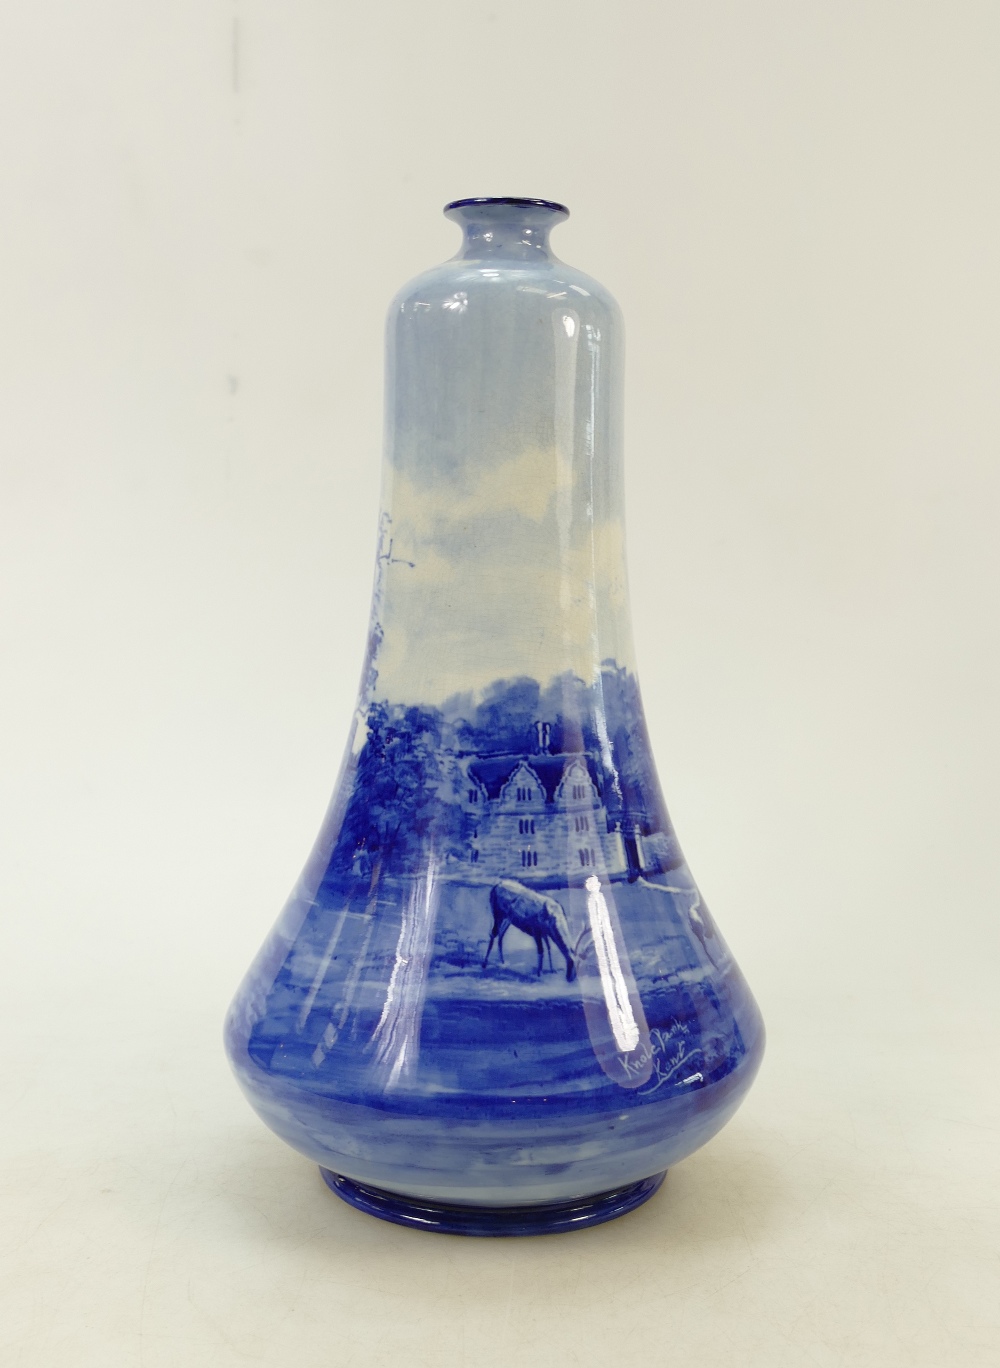 Doulton Burslem ware Vase: 19th Century Doulton Burslem blue & white vase decorated with deer and